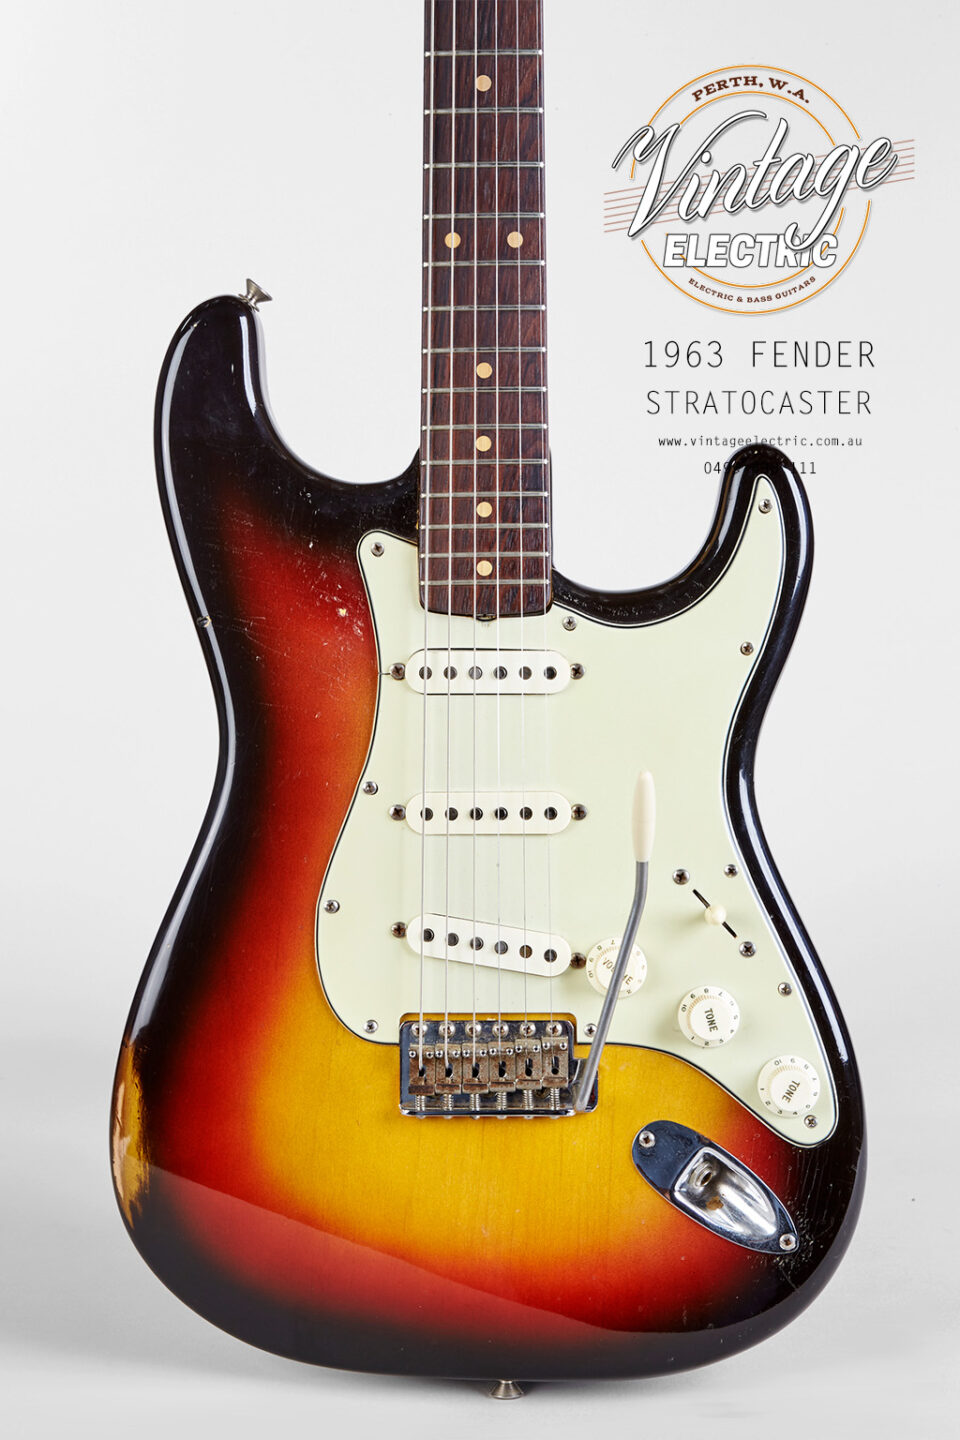 1963 Fender Stratocaster Body